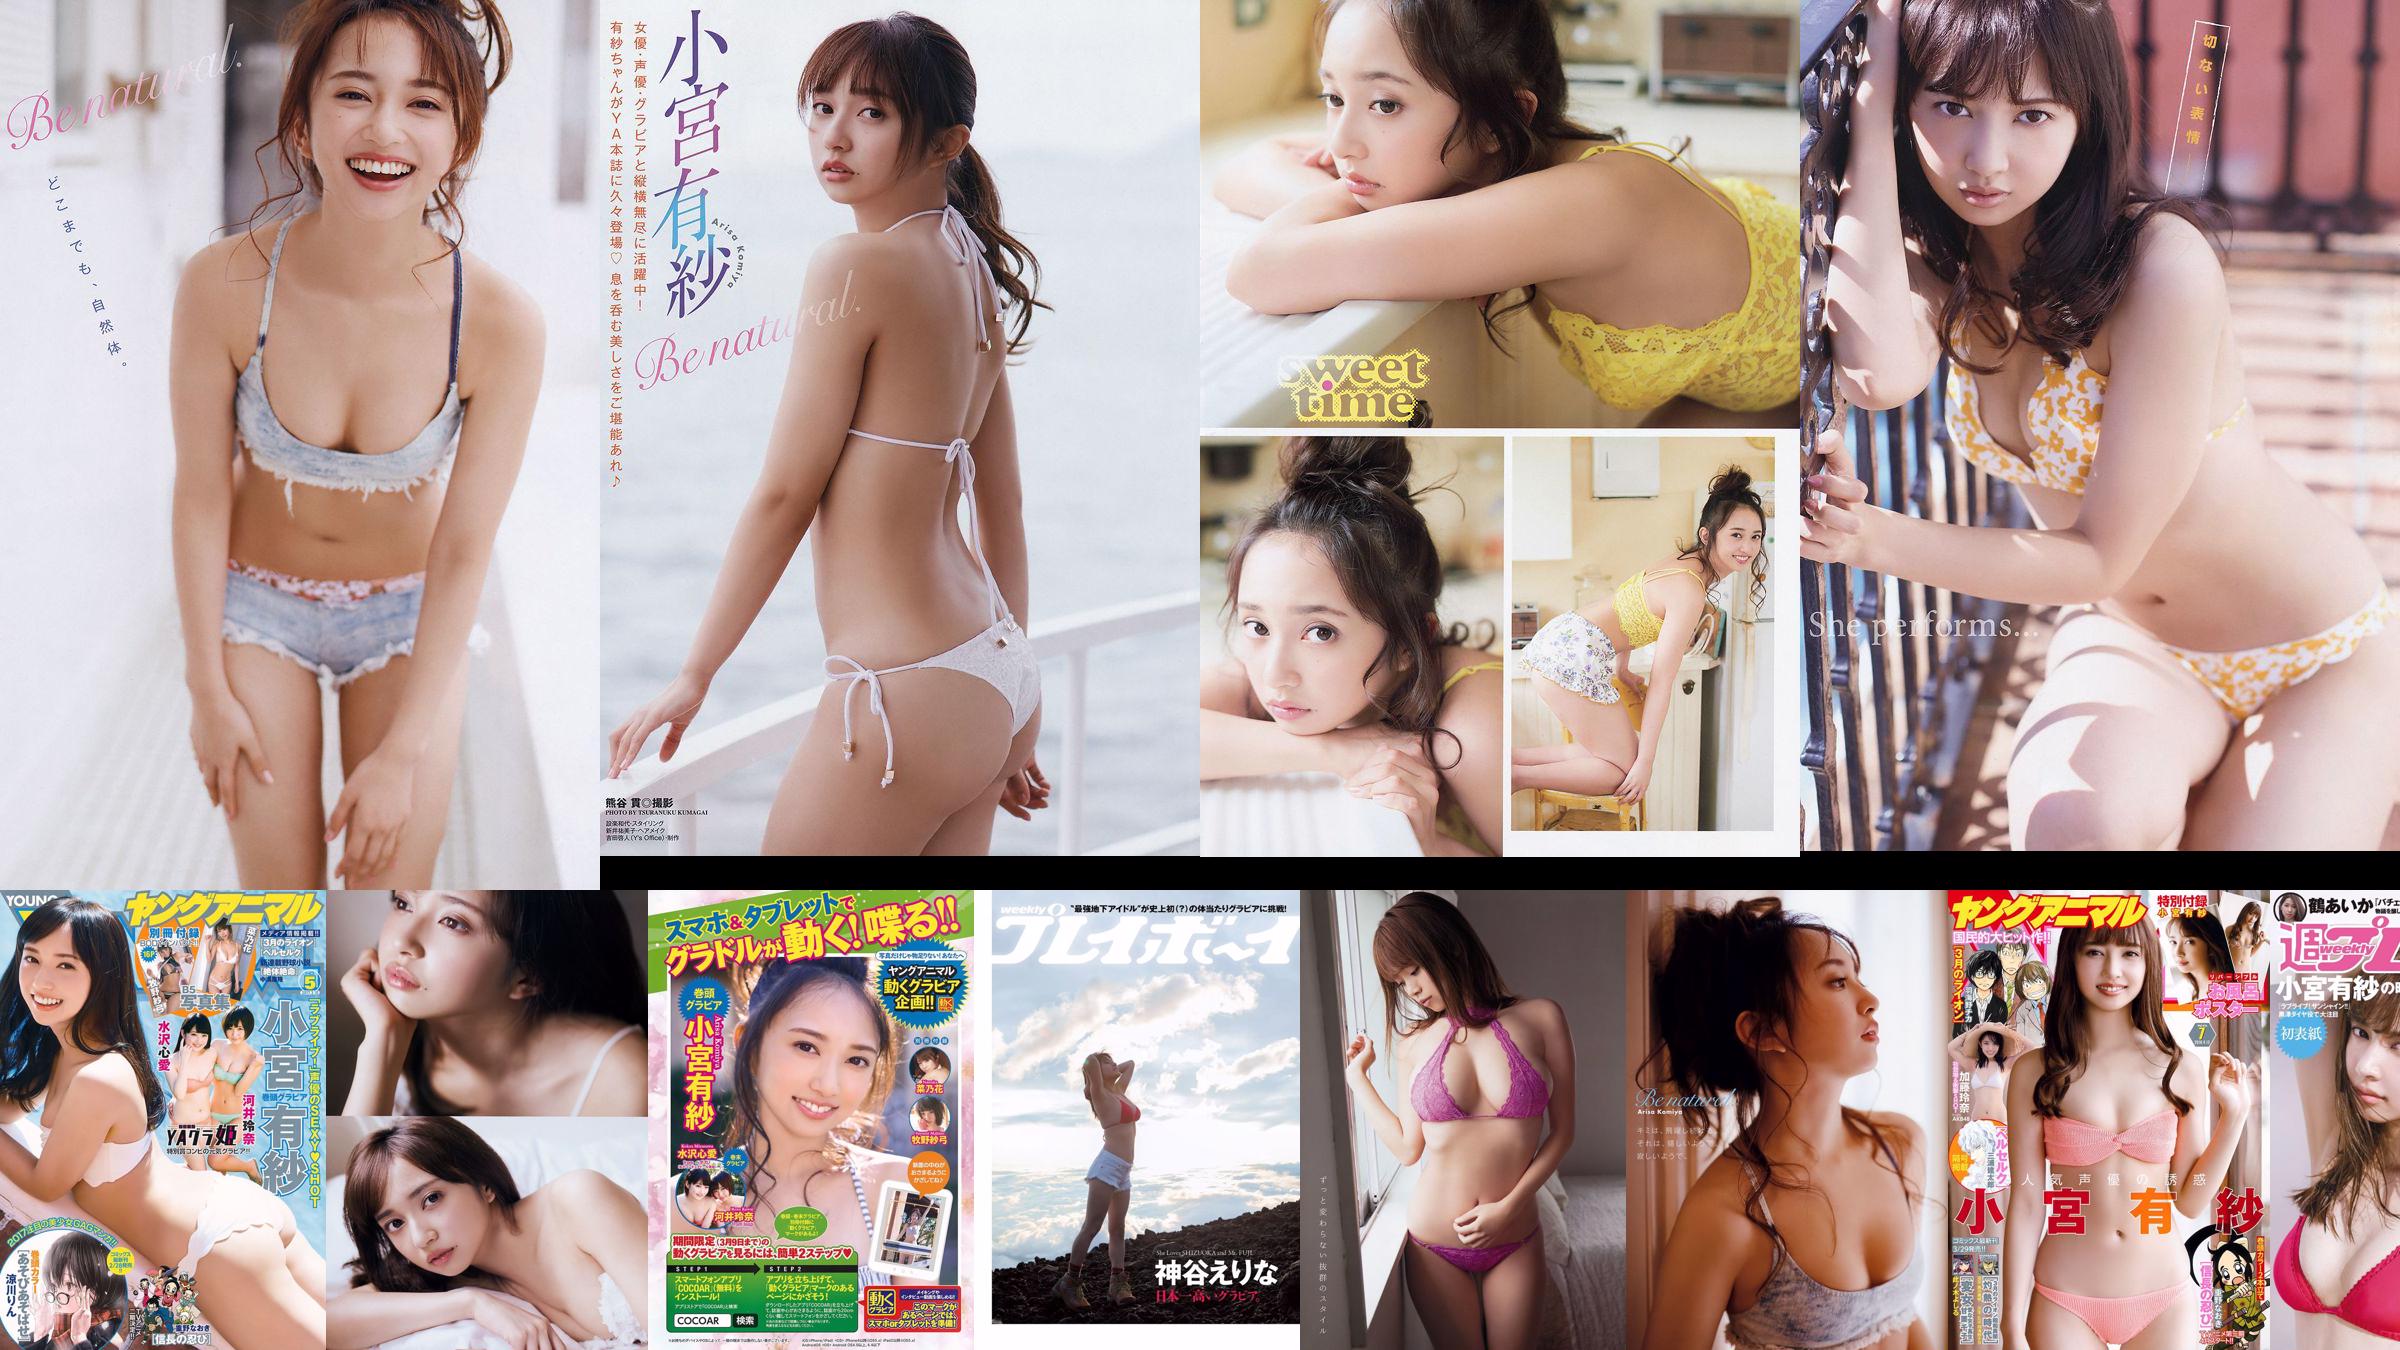 Arisa Komiya Aika Tsuru Sayaka Isoyama Kasumi Arimura Rina Otomo Sei Shiraishi Erina Kamiya [Weekly Playboy] 2017 No.41 Photograph No.0f200f Page 1